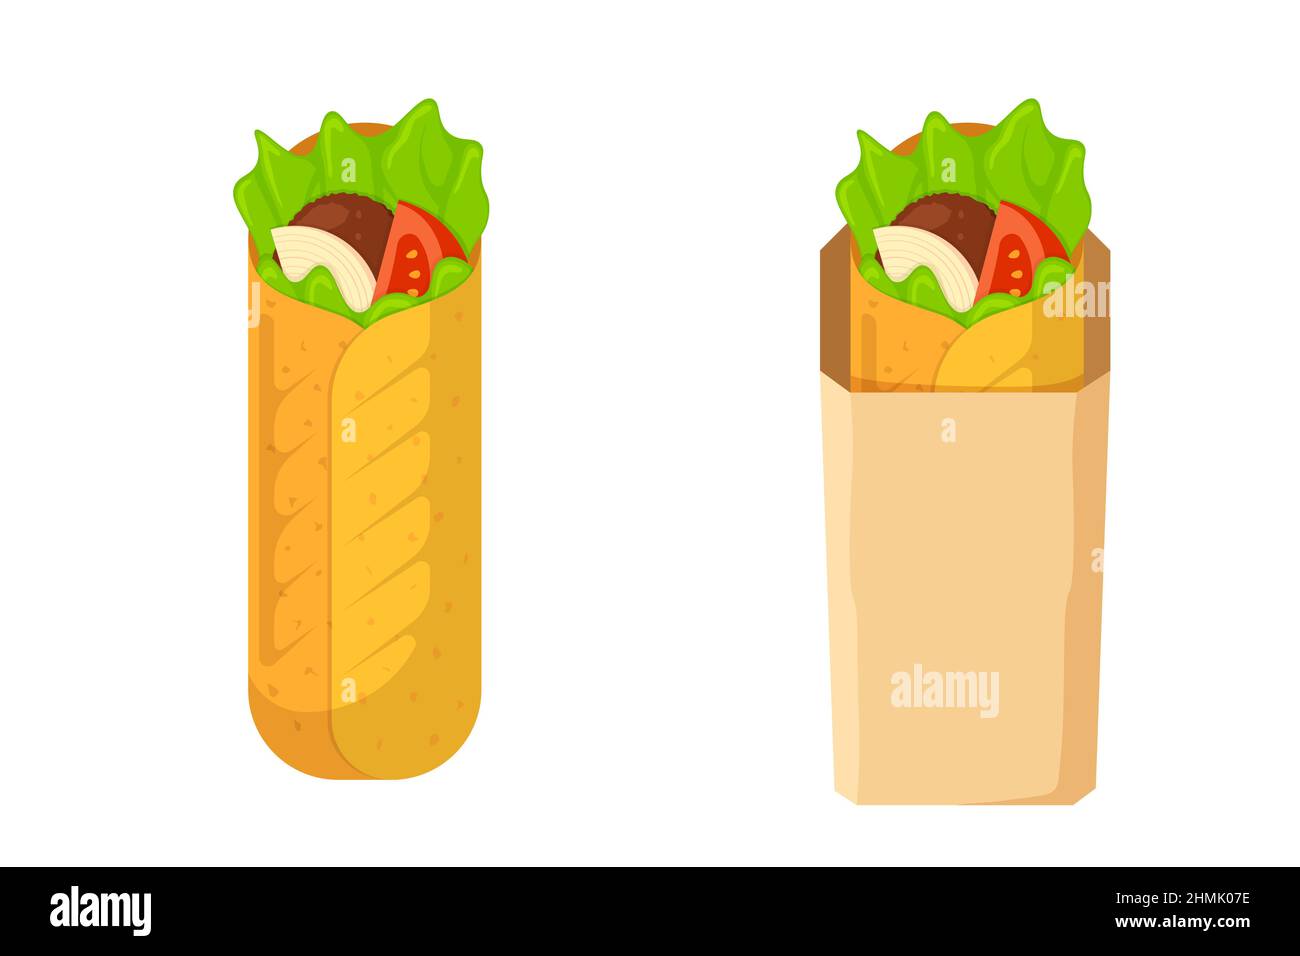 Shawarma nehmen Fast-Food-Fleischrolle in Papierverpackungen. Arabisch-östlicher Kebab-Döner. Cartoon Shaurma oder Burrito. Shawerma setzt flache Vektor-eps-Illustration Stock Vektor